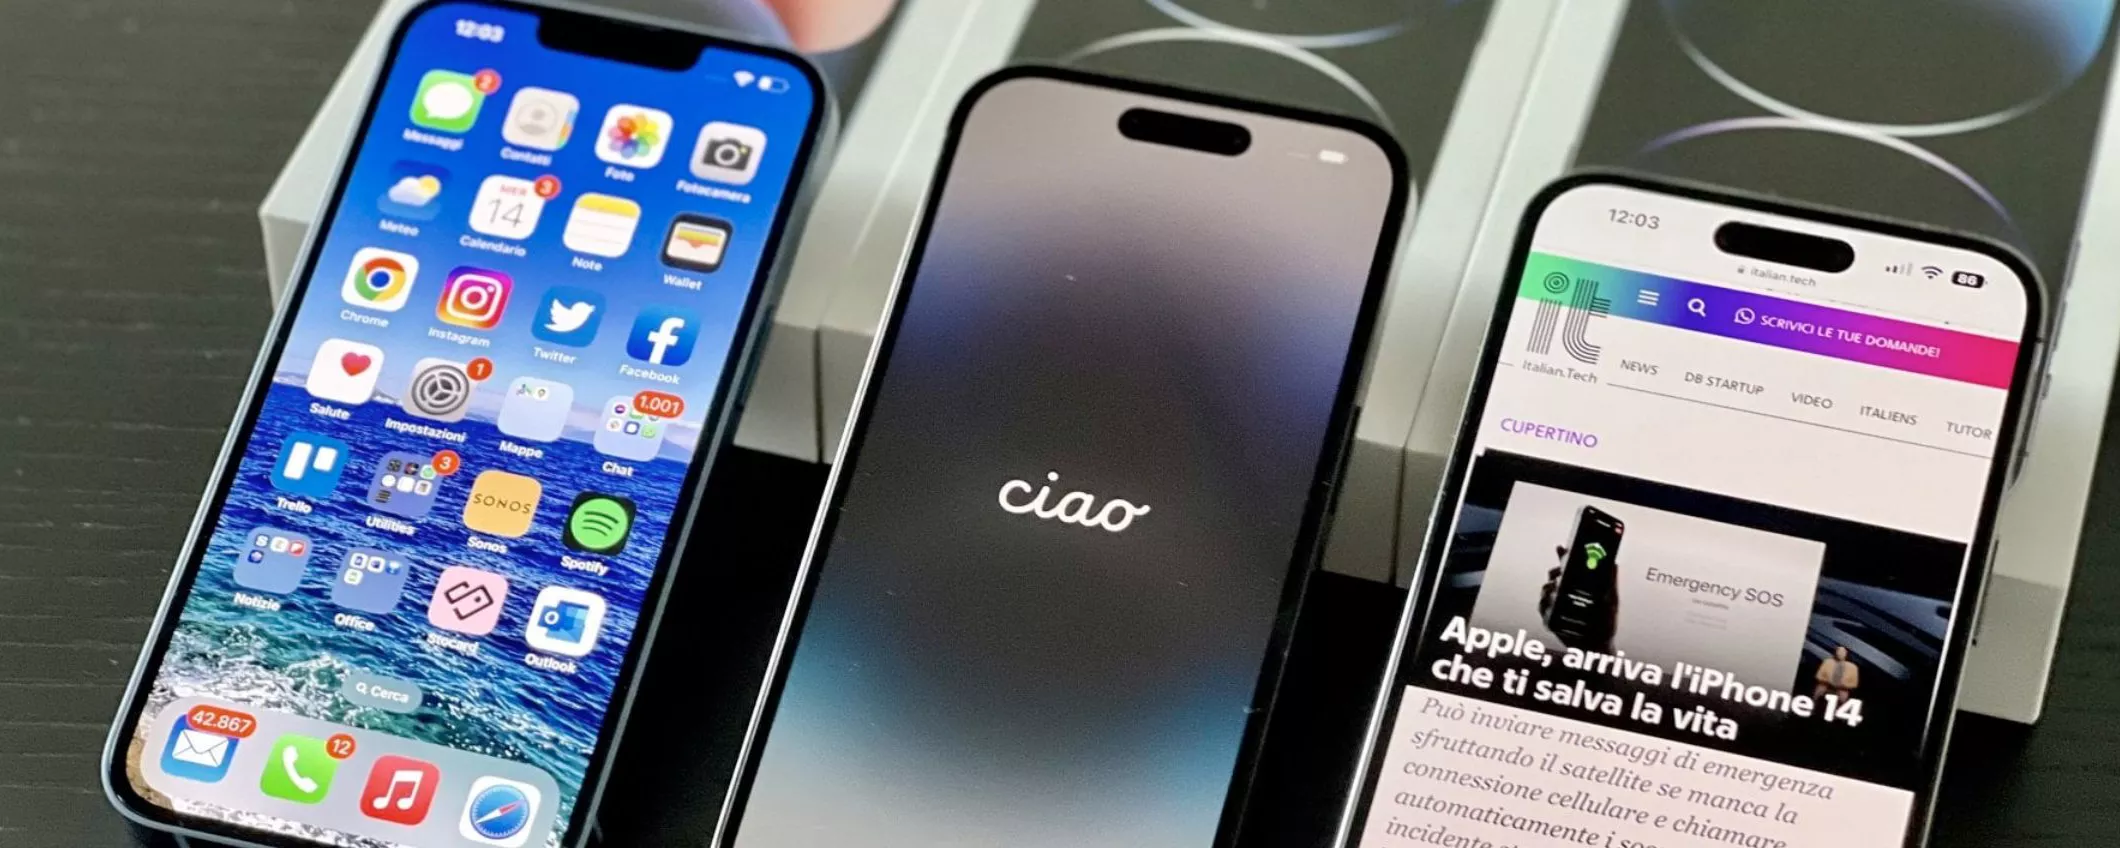 Apple prevede di lanciare un iPhone con display microLED in futuro